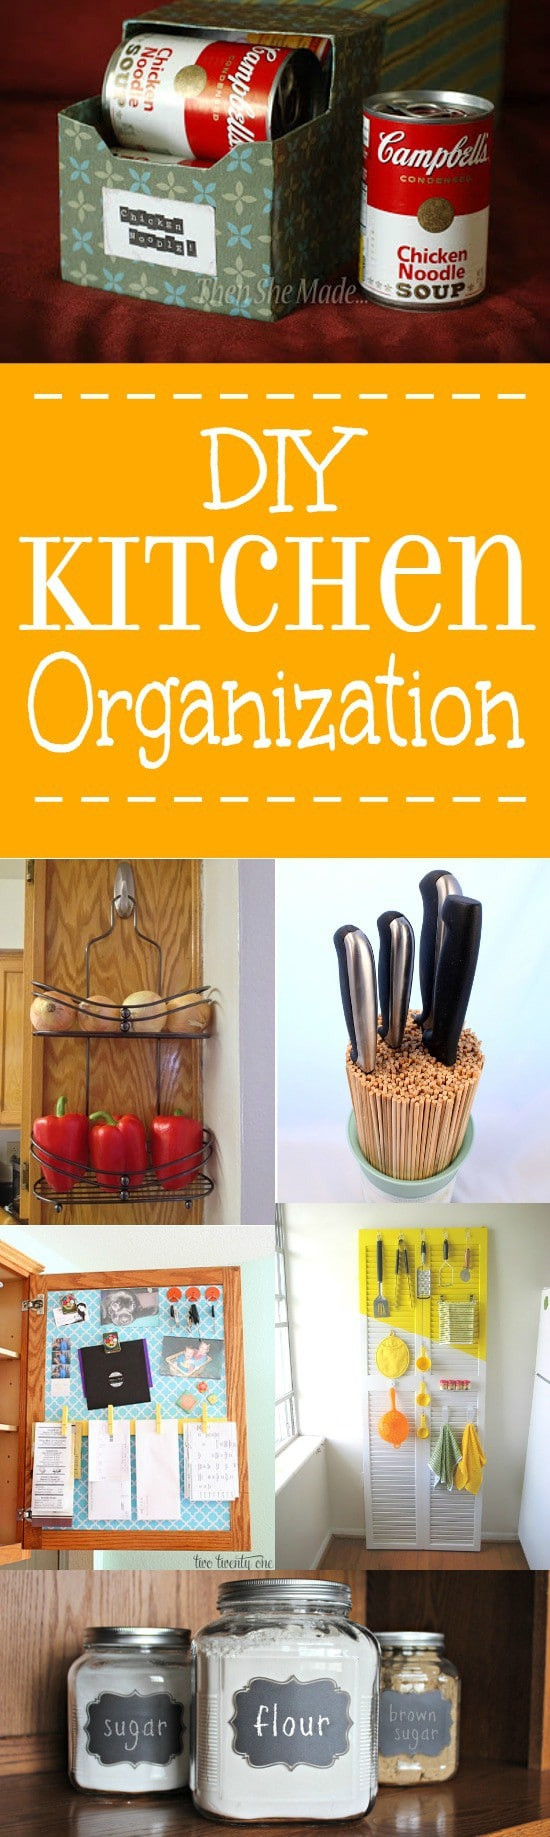 DIY Kitchen Organizing Ideas
 24 DIY Kitchen Organization Ideas